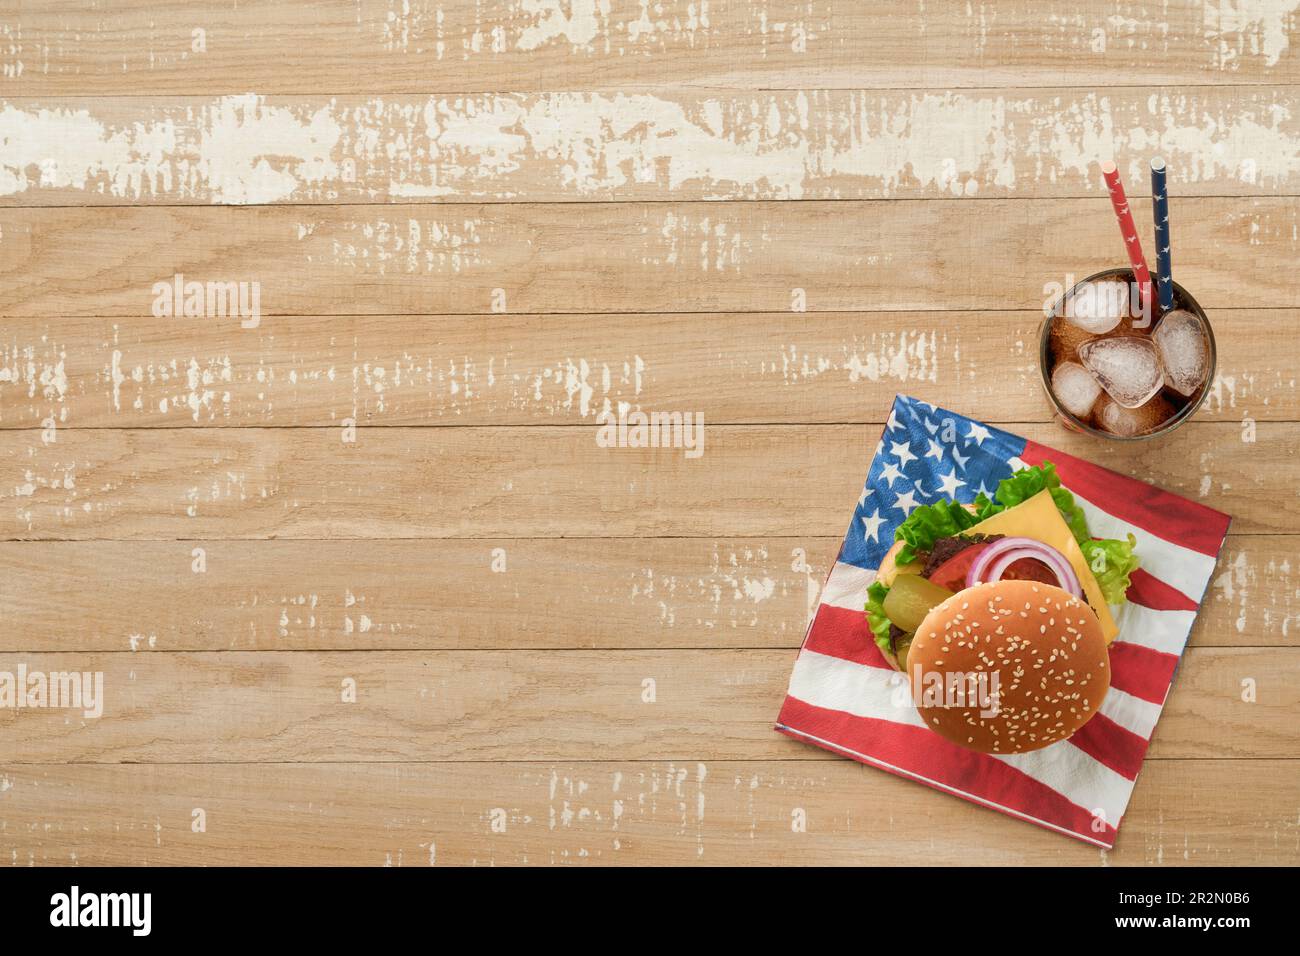 4th luglio, cucina tradizionale da picnic per l'American Independence Day. American Burger e cocktail, bandiere americane e simboli degli USA Patriotic picnic holida Foto Stock